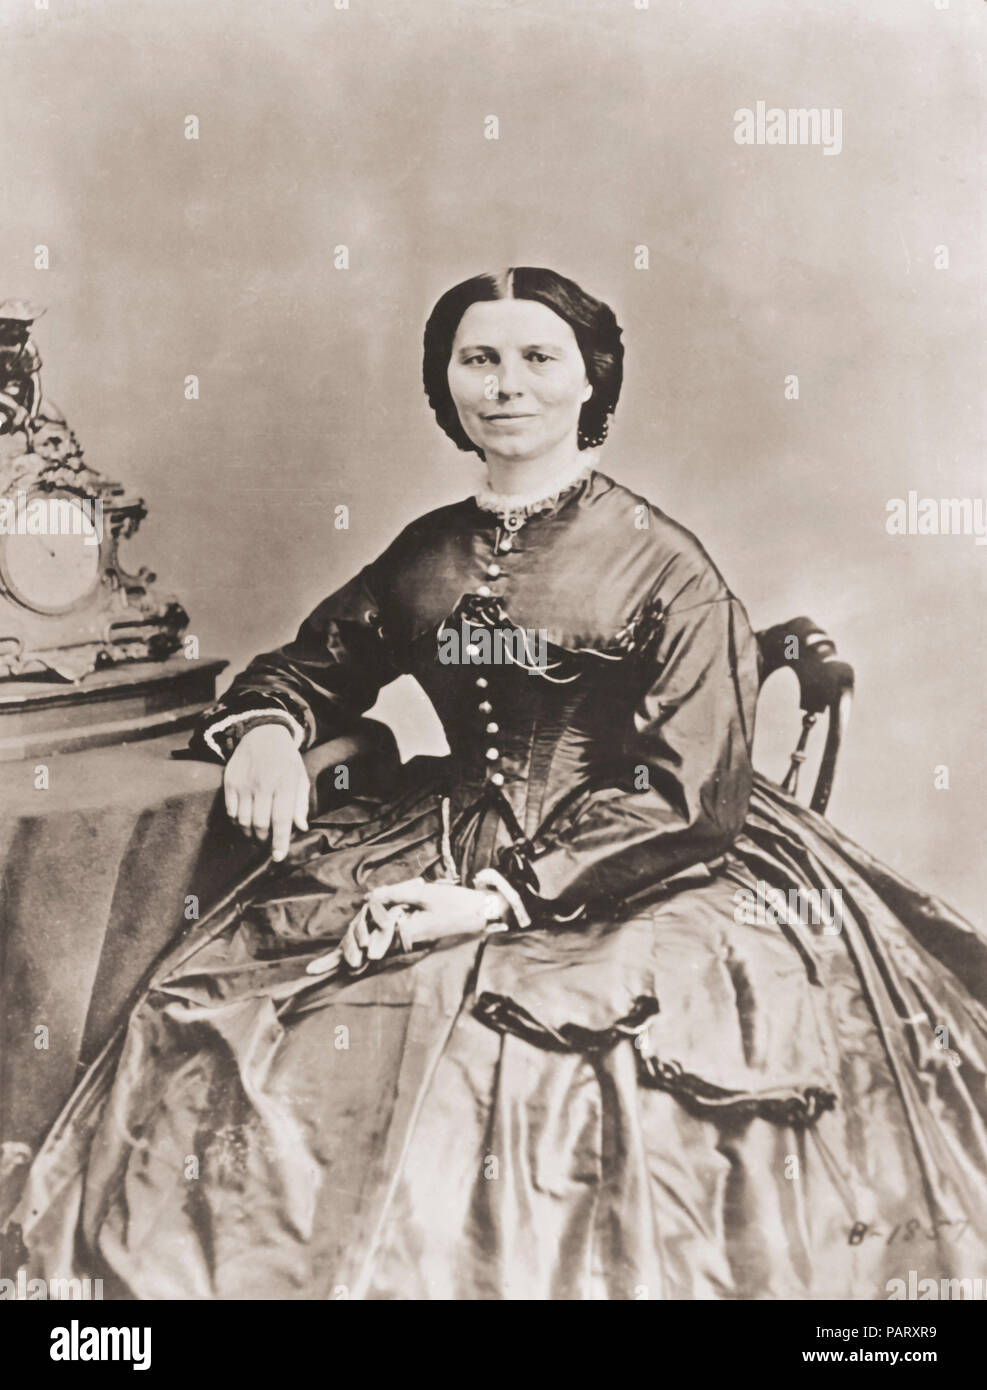 Clara Barton. Nom complet, Clarissa Harlowe Barton, 1821-1912. Née américaine infirmière qui a fondé la Croix Rouge américaine. Banque D'Images